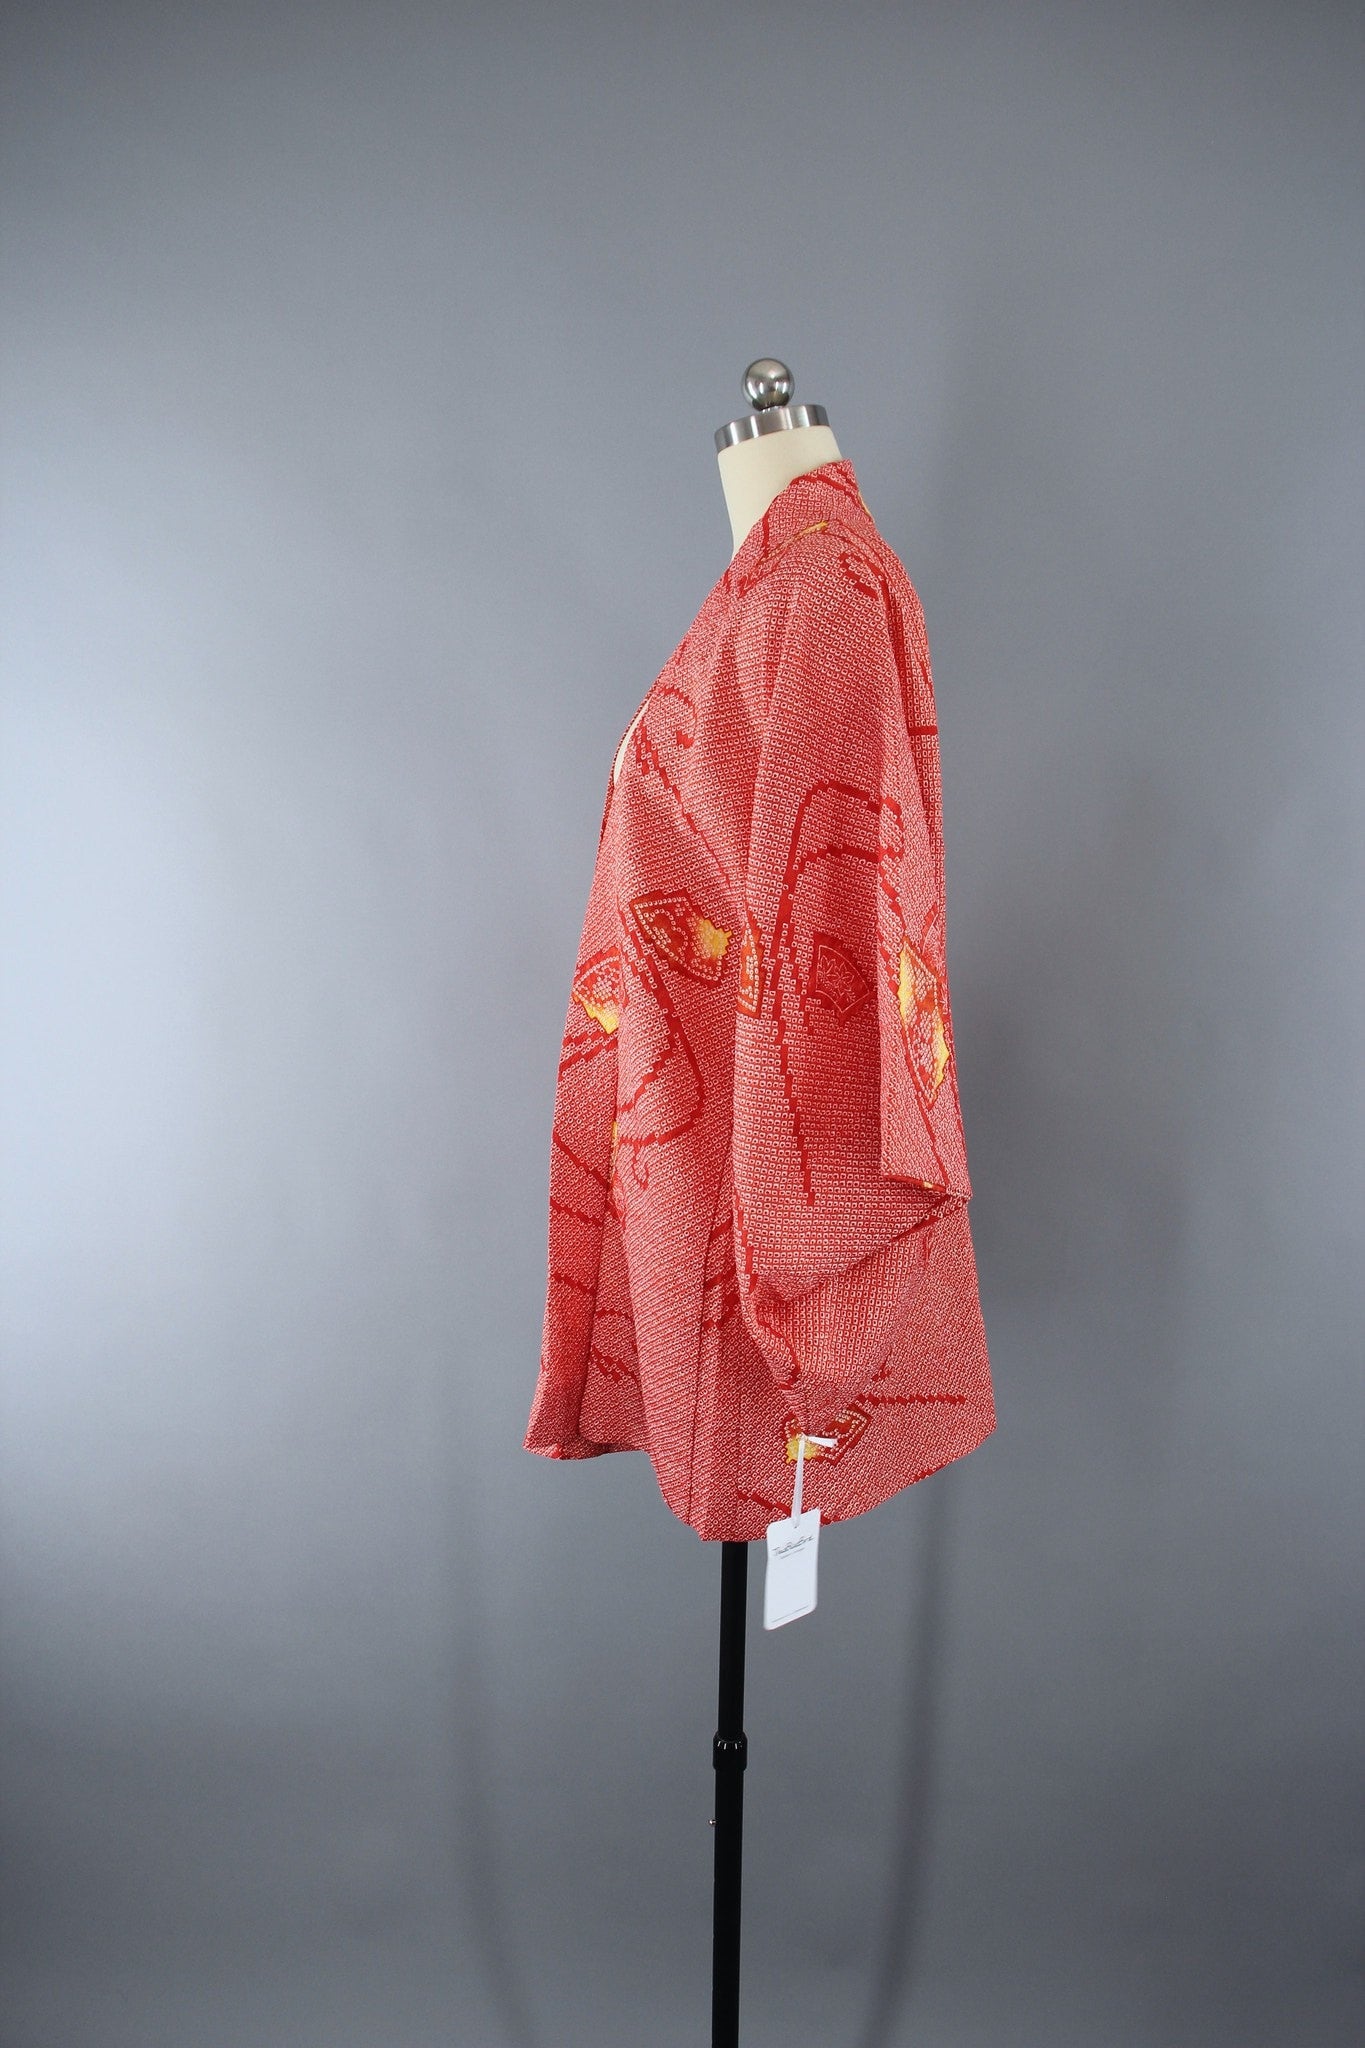 1970s Vintage Haori Kimono Jacket in Red Orange Shibori Print - ThisBlueBird